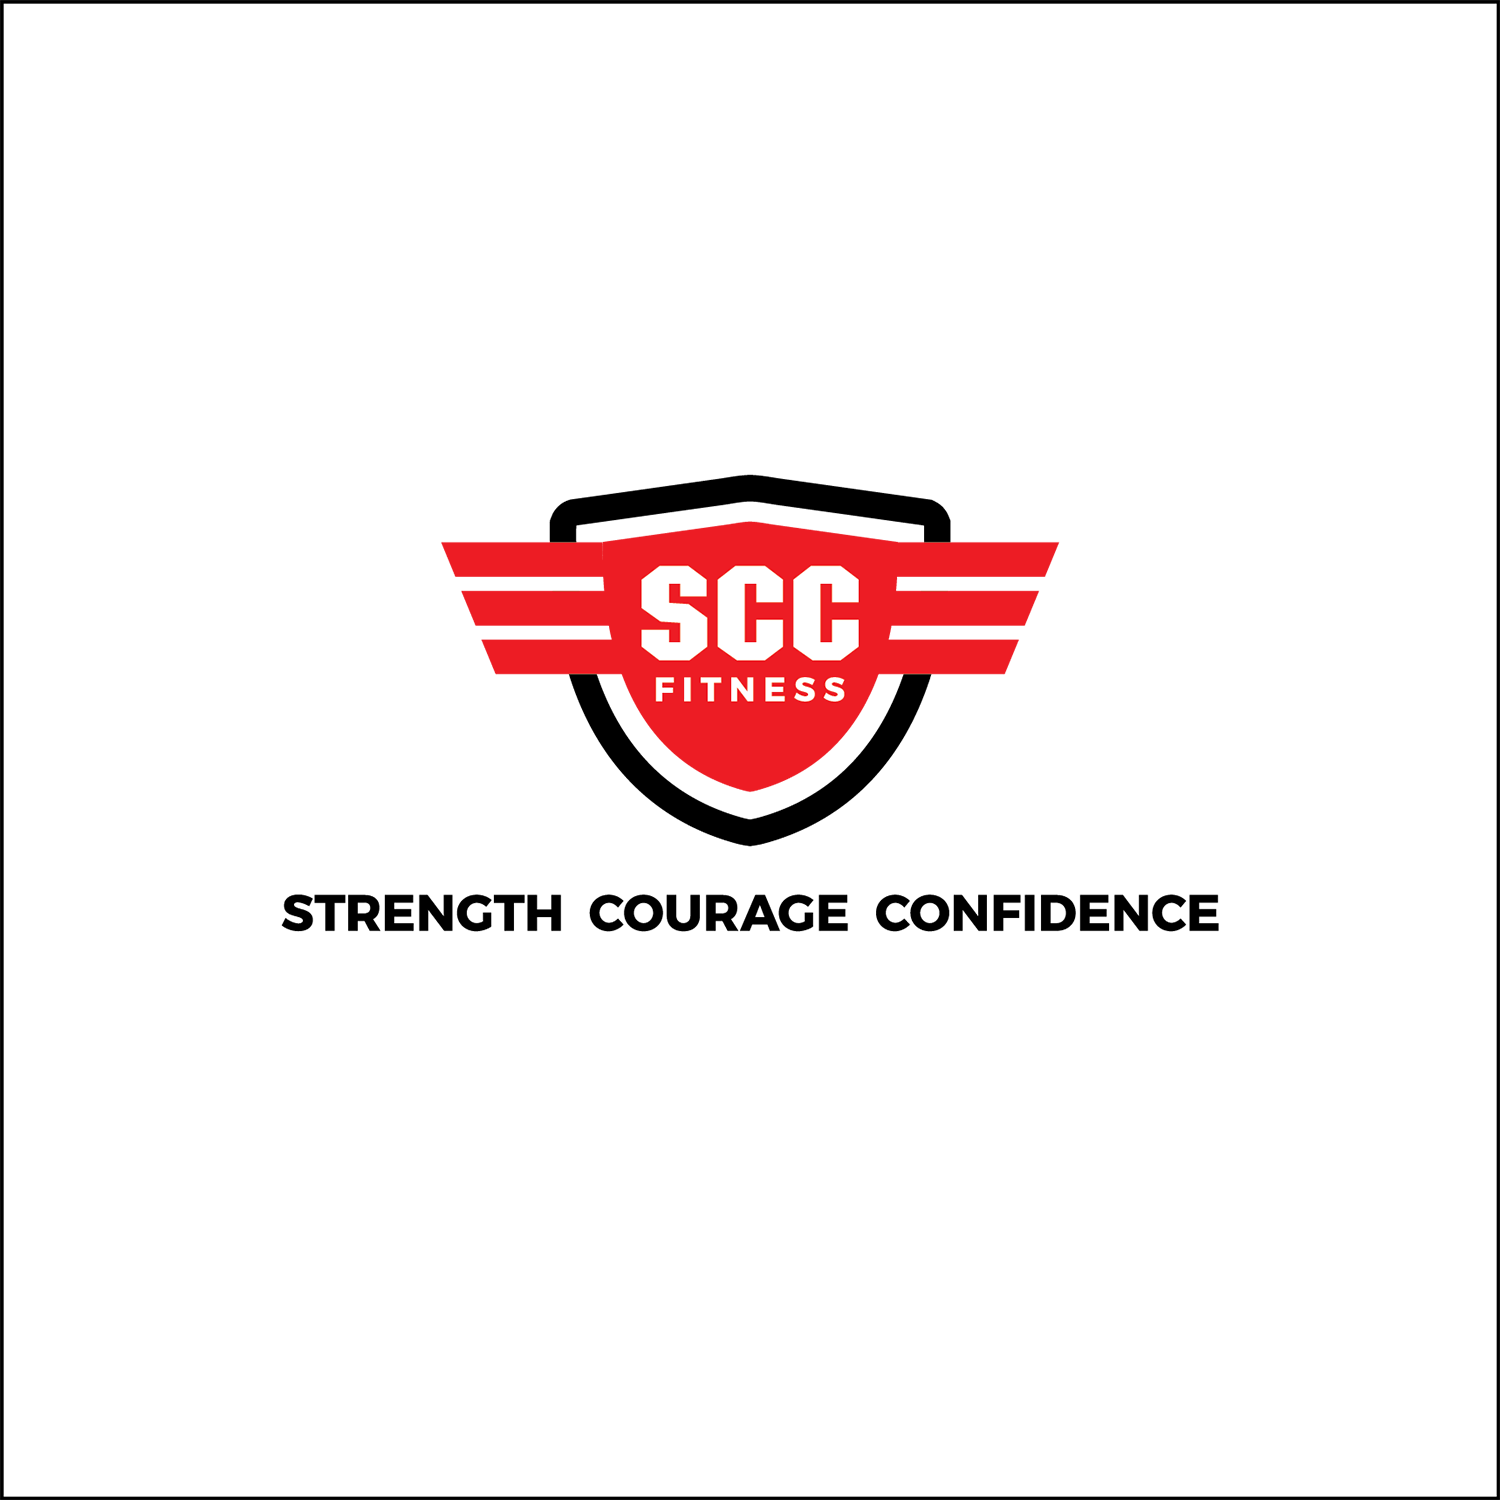 SCC Logo - Elegant, Playful, Fitness Logo Design for SCC Fitness Strength